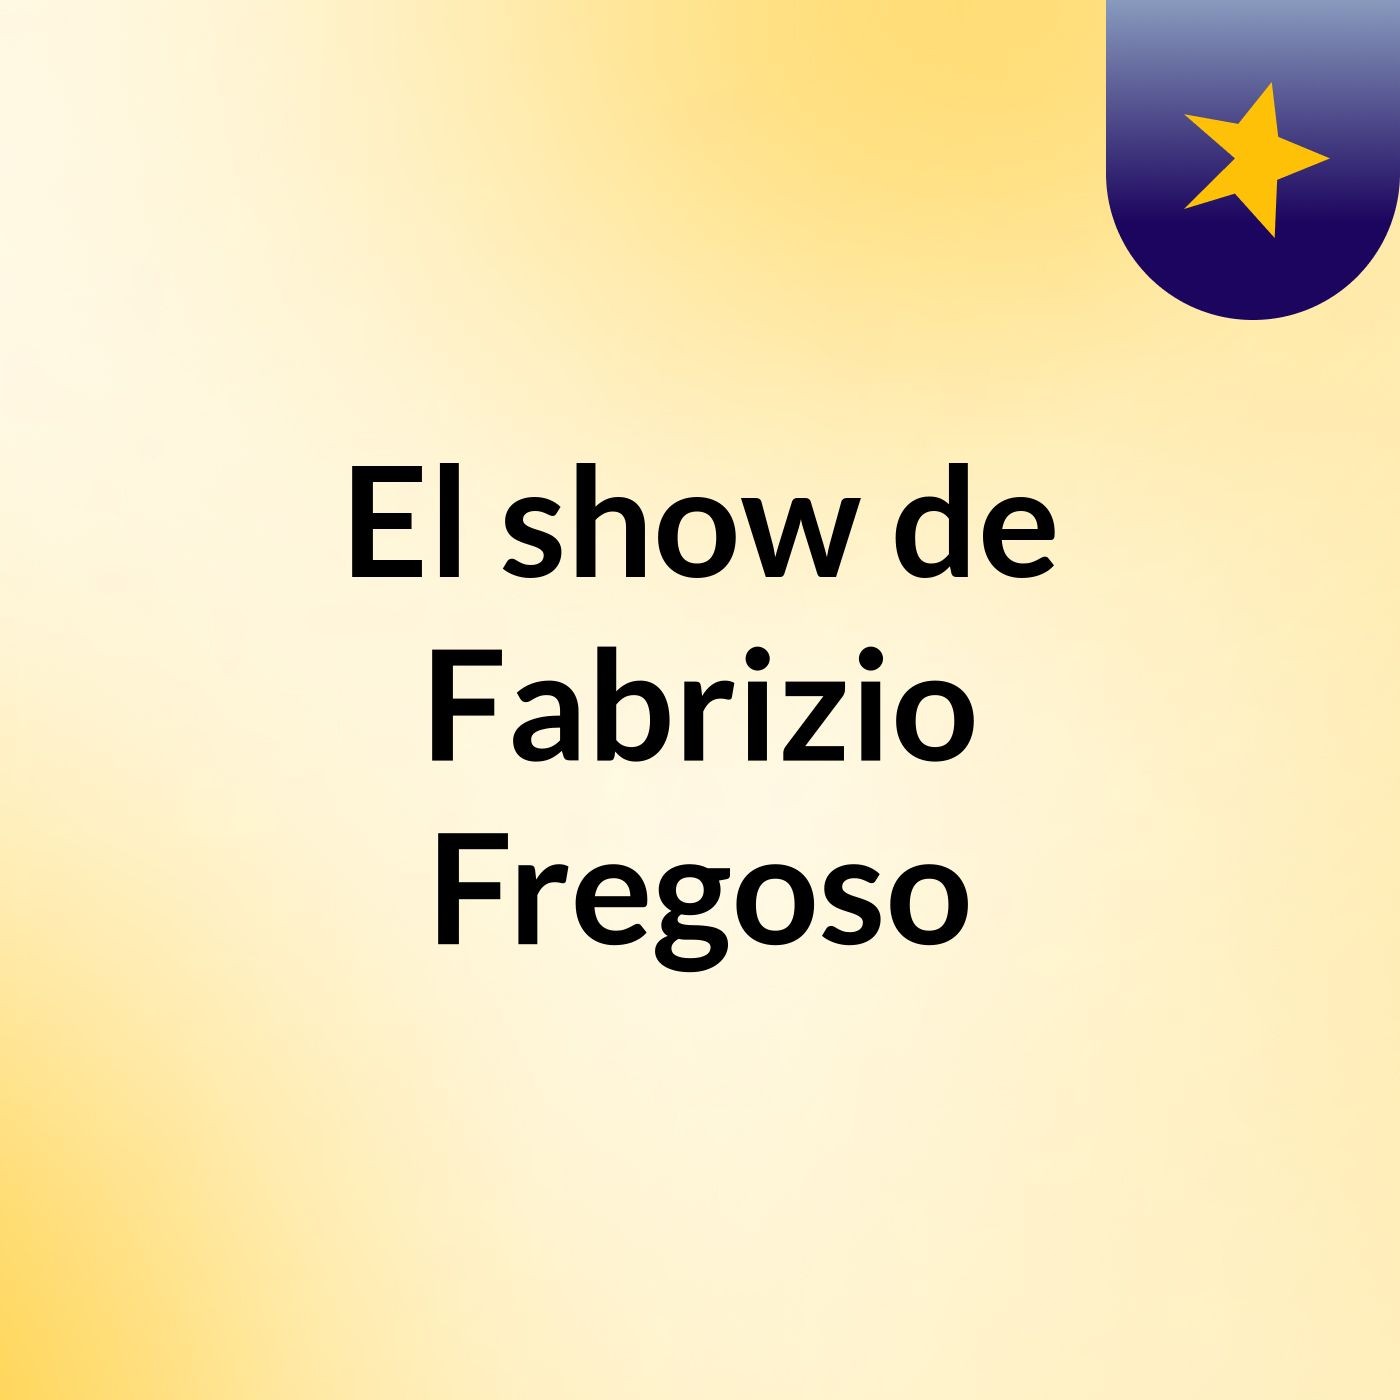 Episodio 3 - El show de Fabrizio Fregoso